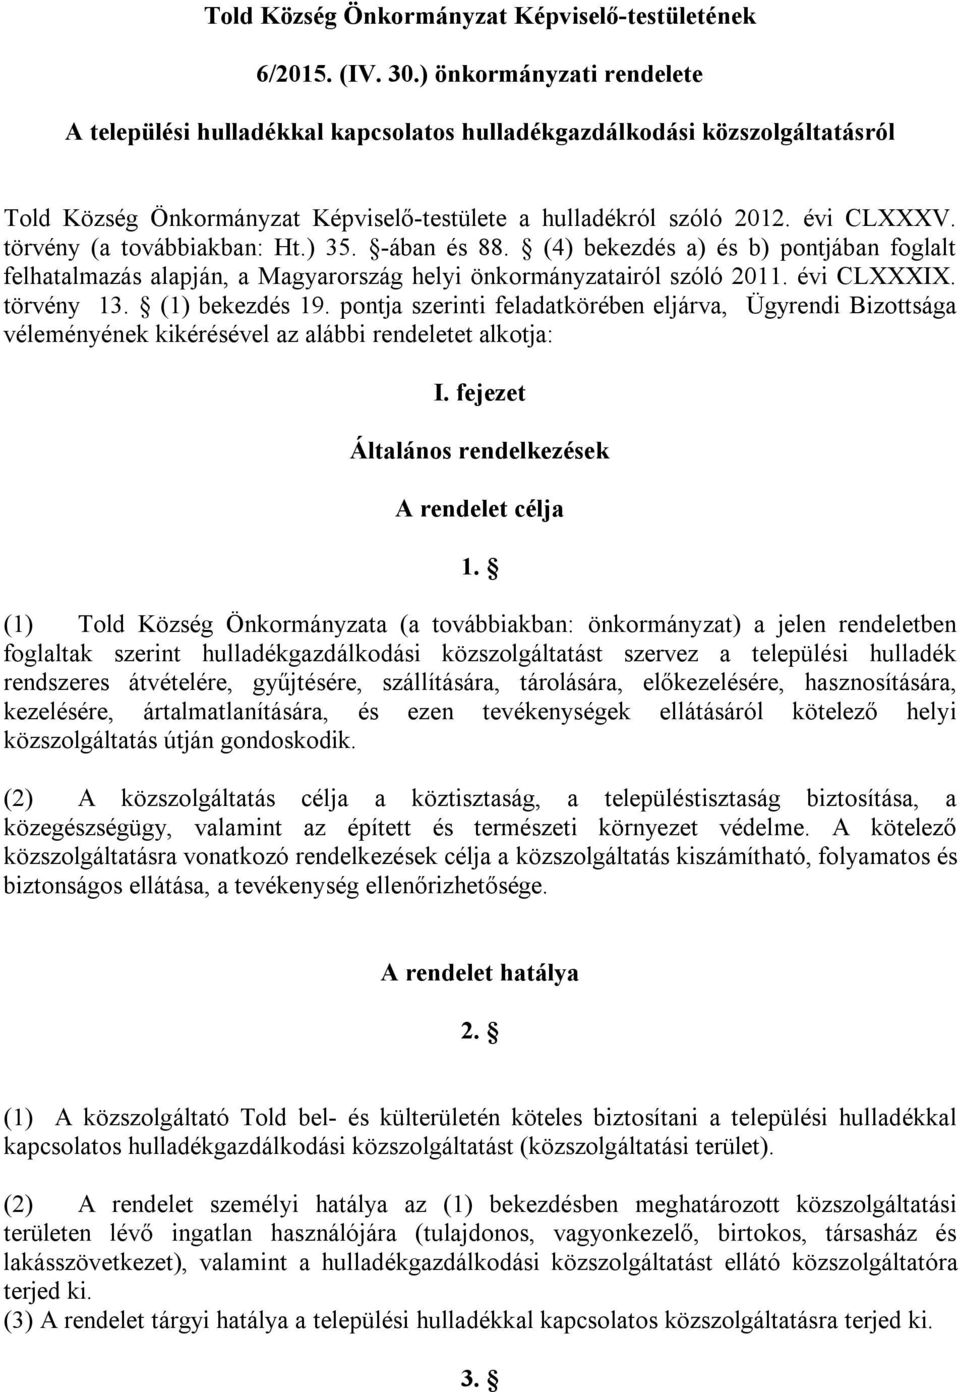 törvény (a továbbiakban: Ht.) 35. -ában és 88. (4) bekezdés a) és b) pontjában foglalt felhatalmazás alapján, a Magyarország helyi önkormányzatairól szóló 2011. évi CLXXXIX. törvény 13.